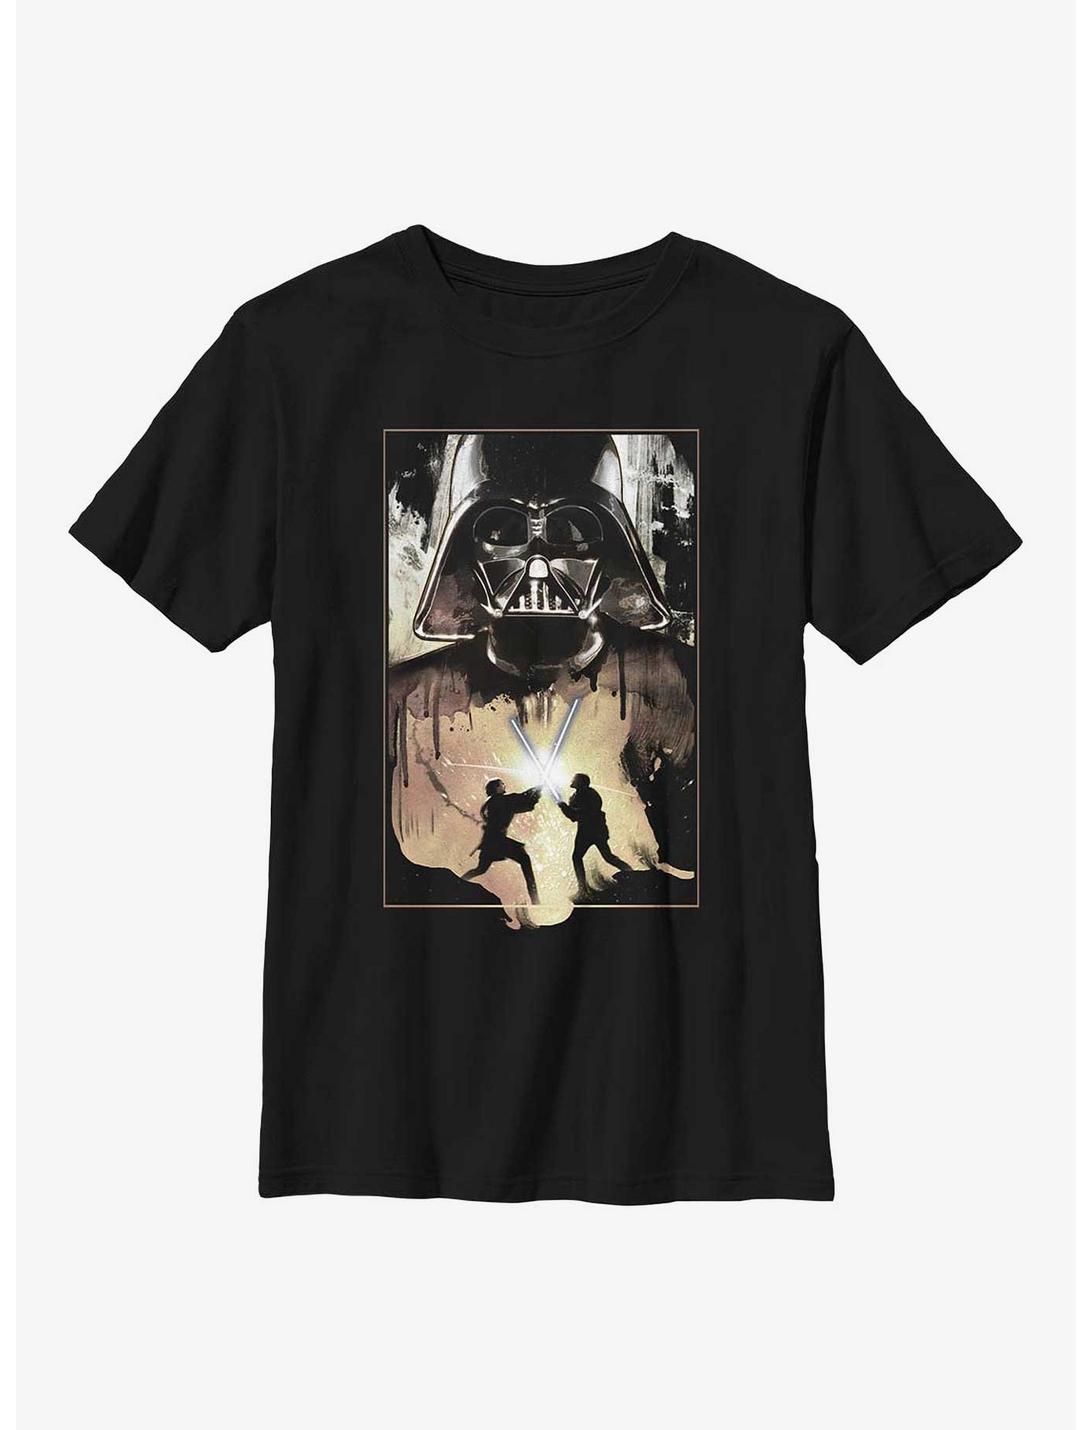 Star Wars Darth Vader Lightsaber Battle Youth T-Shirt, BLACK, hi-res